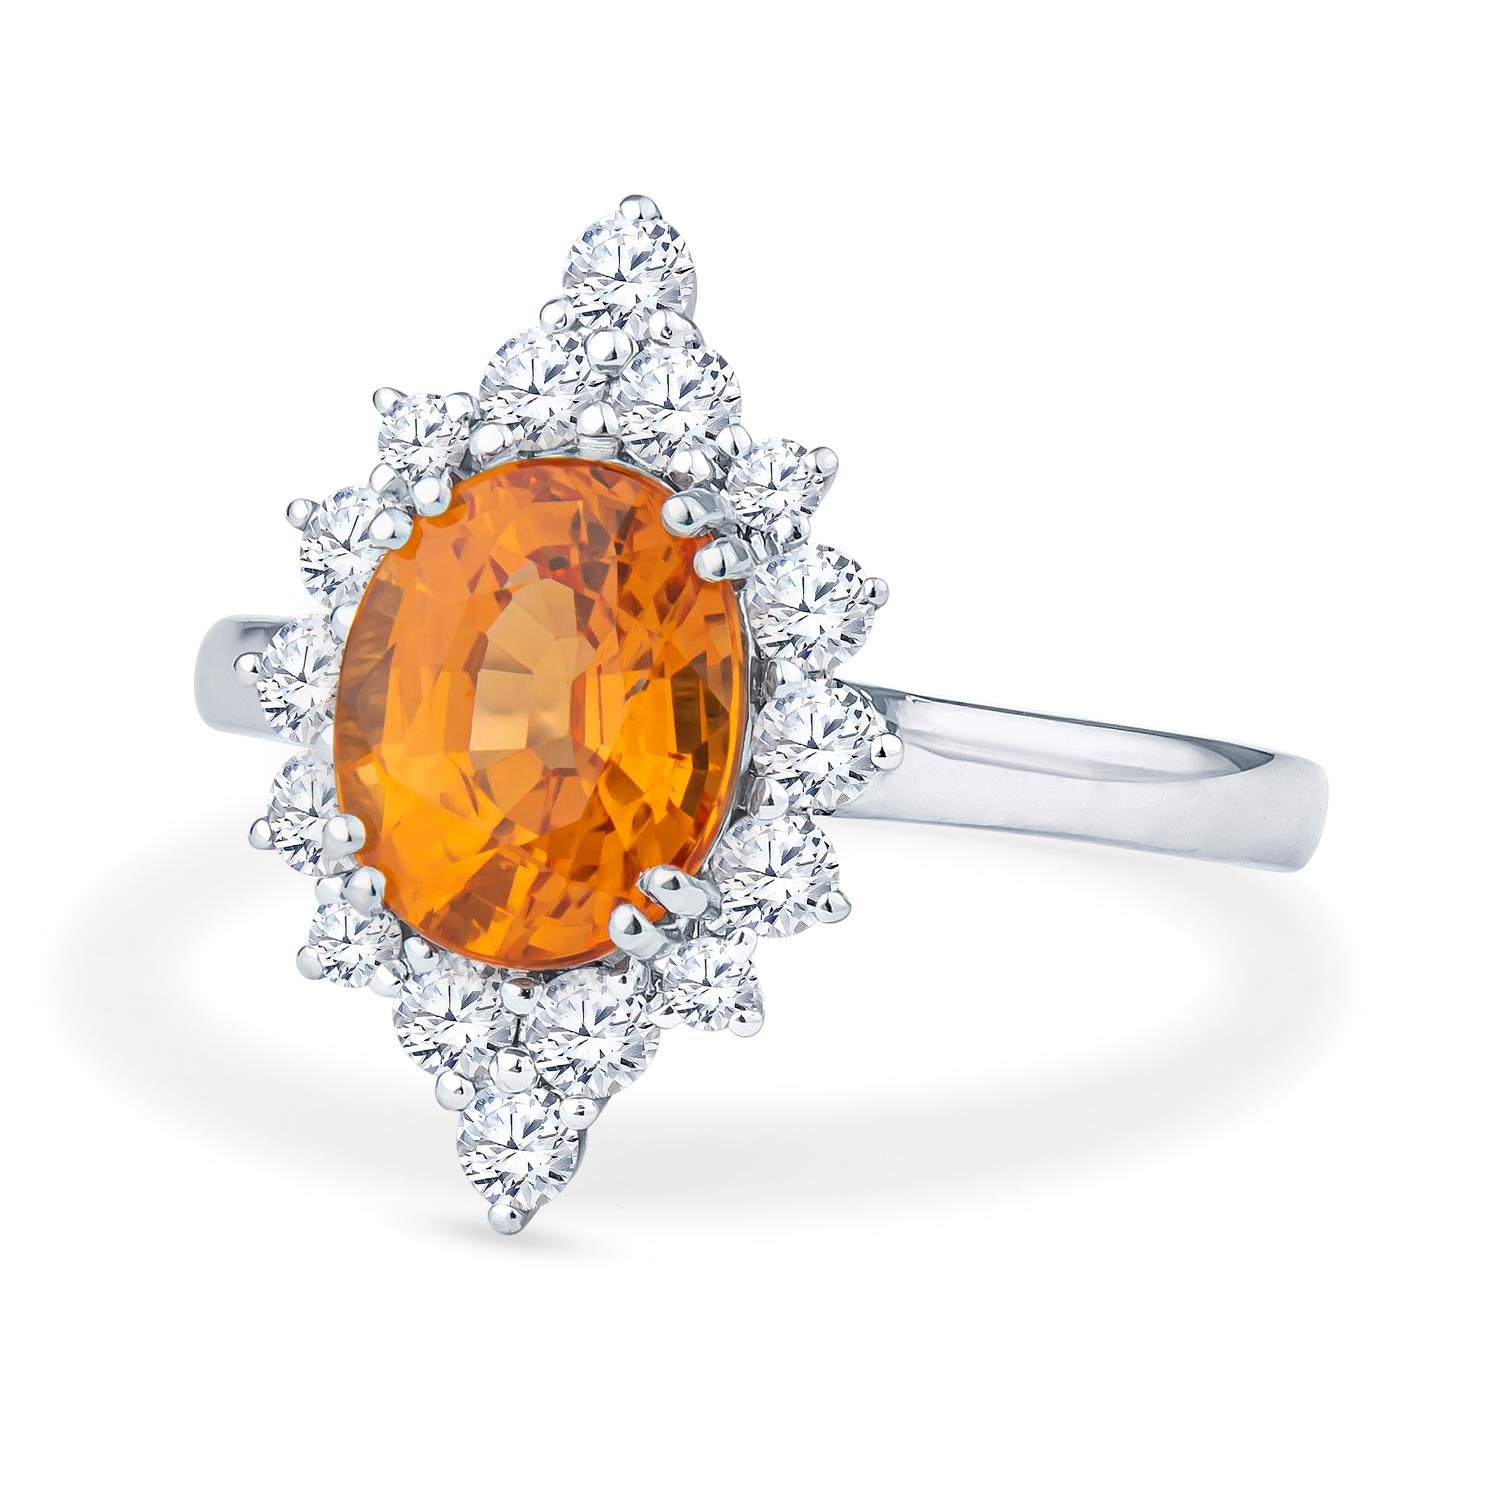 Dieser auffällige 2,68ct natürliche ovale Spessartin-Granat hat einen kräftigen Orangeton, der sicher jedem auffällt. Dieser Ring wird durch mehrere natürliche runde Diamanten mit einem Gesamtgewicht von 0,55 Karat vervollständigt. Die Steine sind